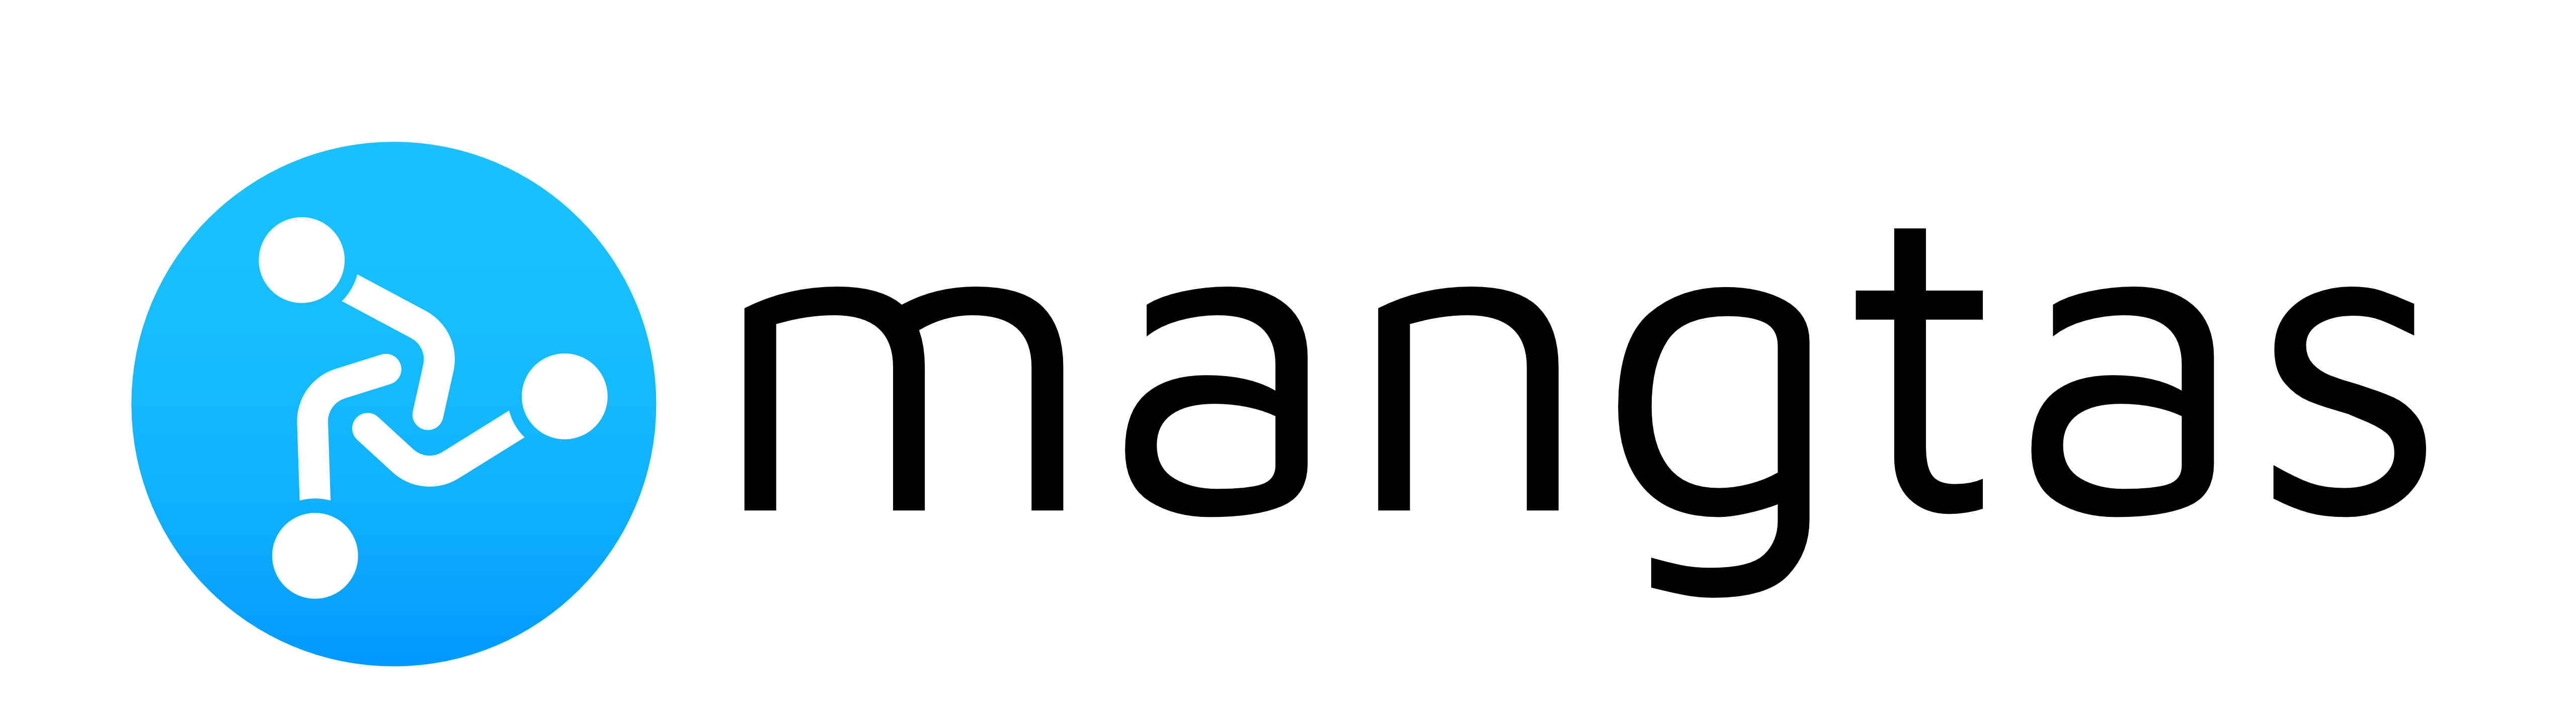 Mangtas logo partnership page